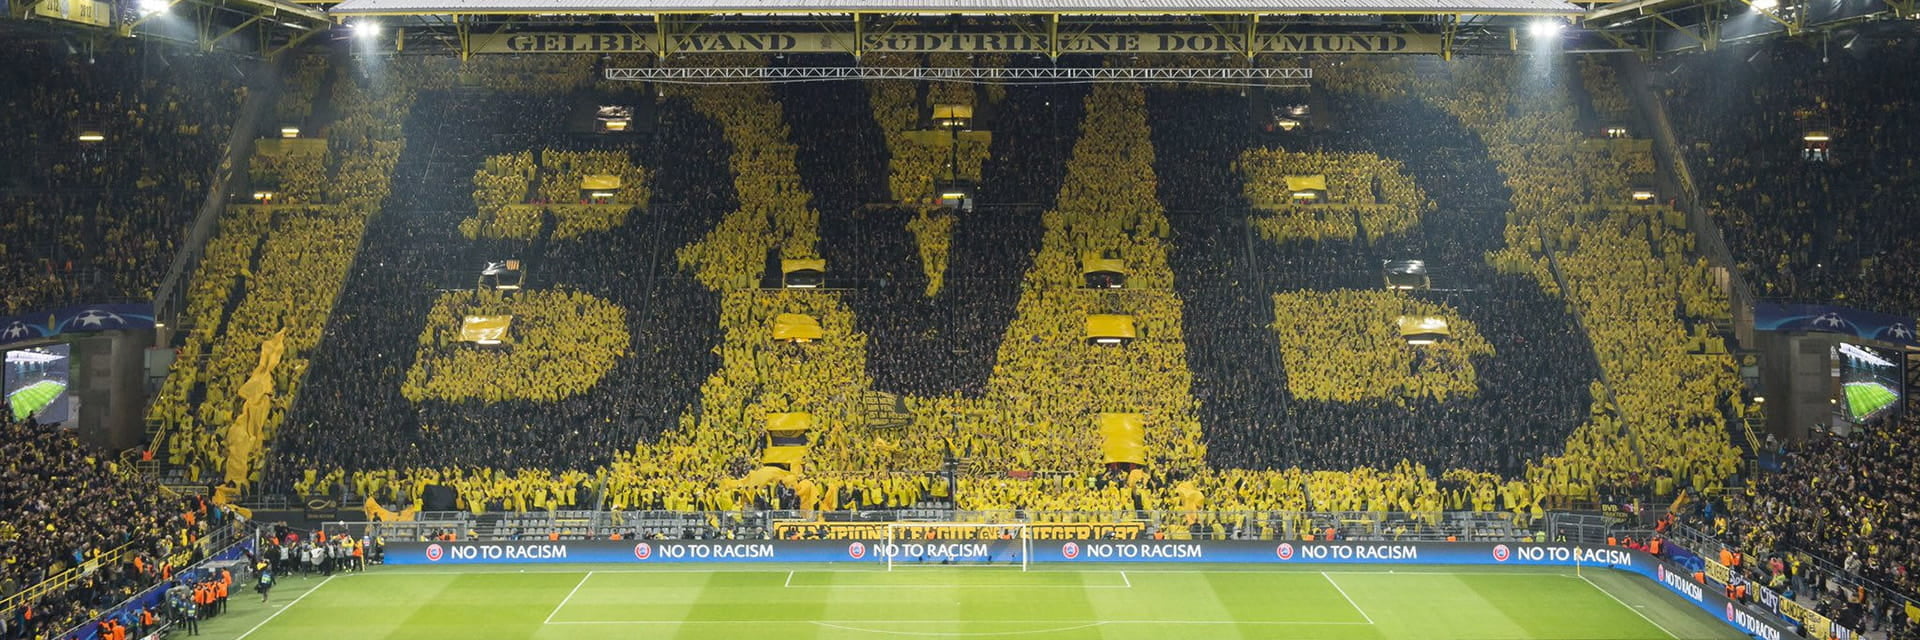 Borussia Dortmund - VfL Bochum, 6 novembreà 15:30